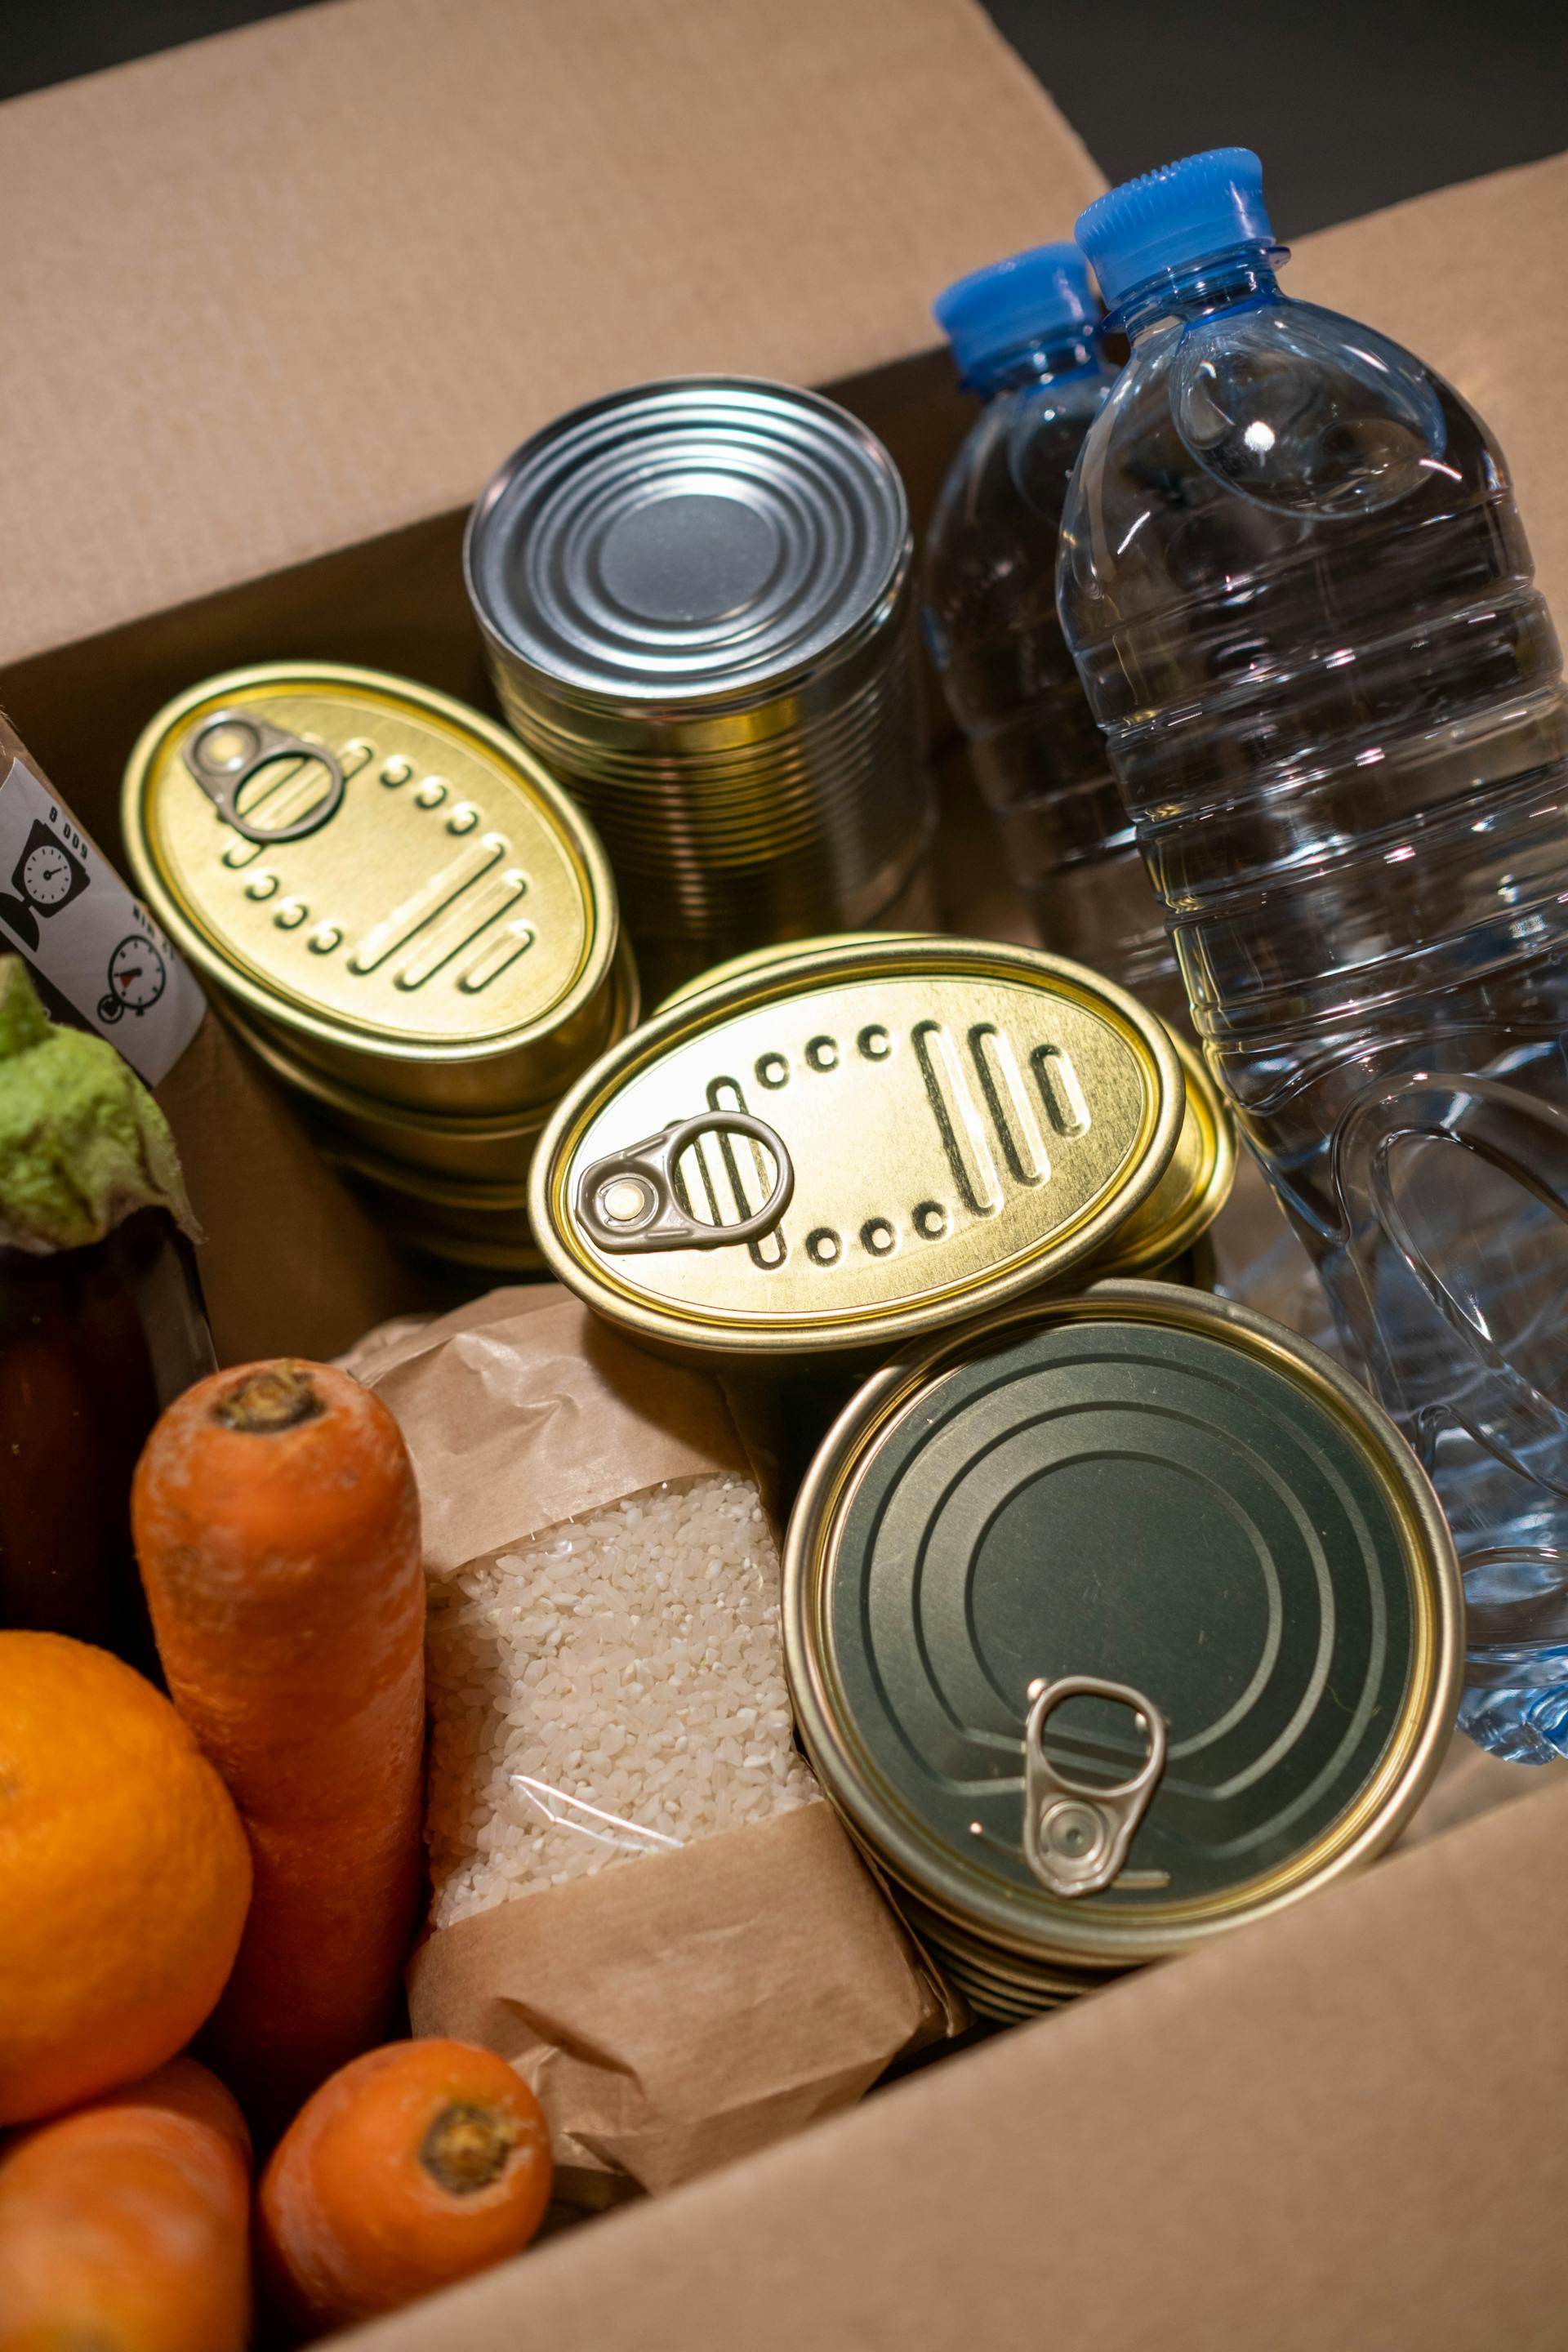 Don de nourriture avec des boîtes de conserve, des bouteilles d'eau et des légumes frais | Source : Pexels